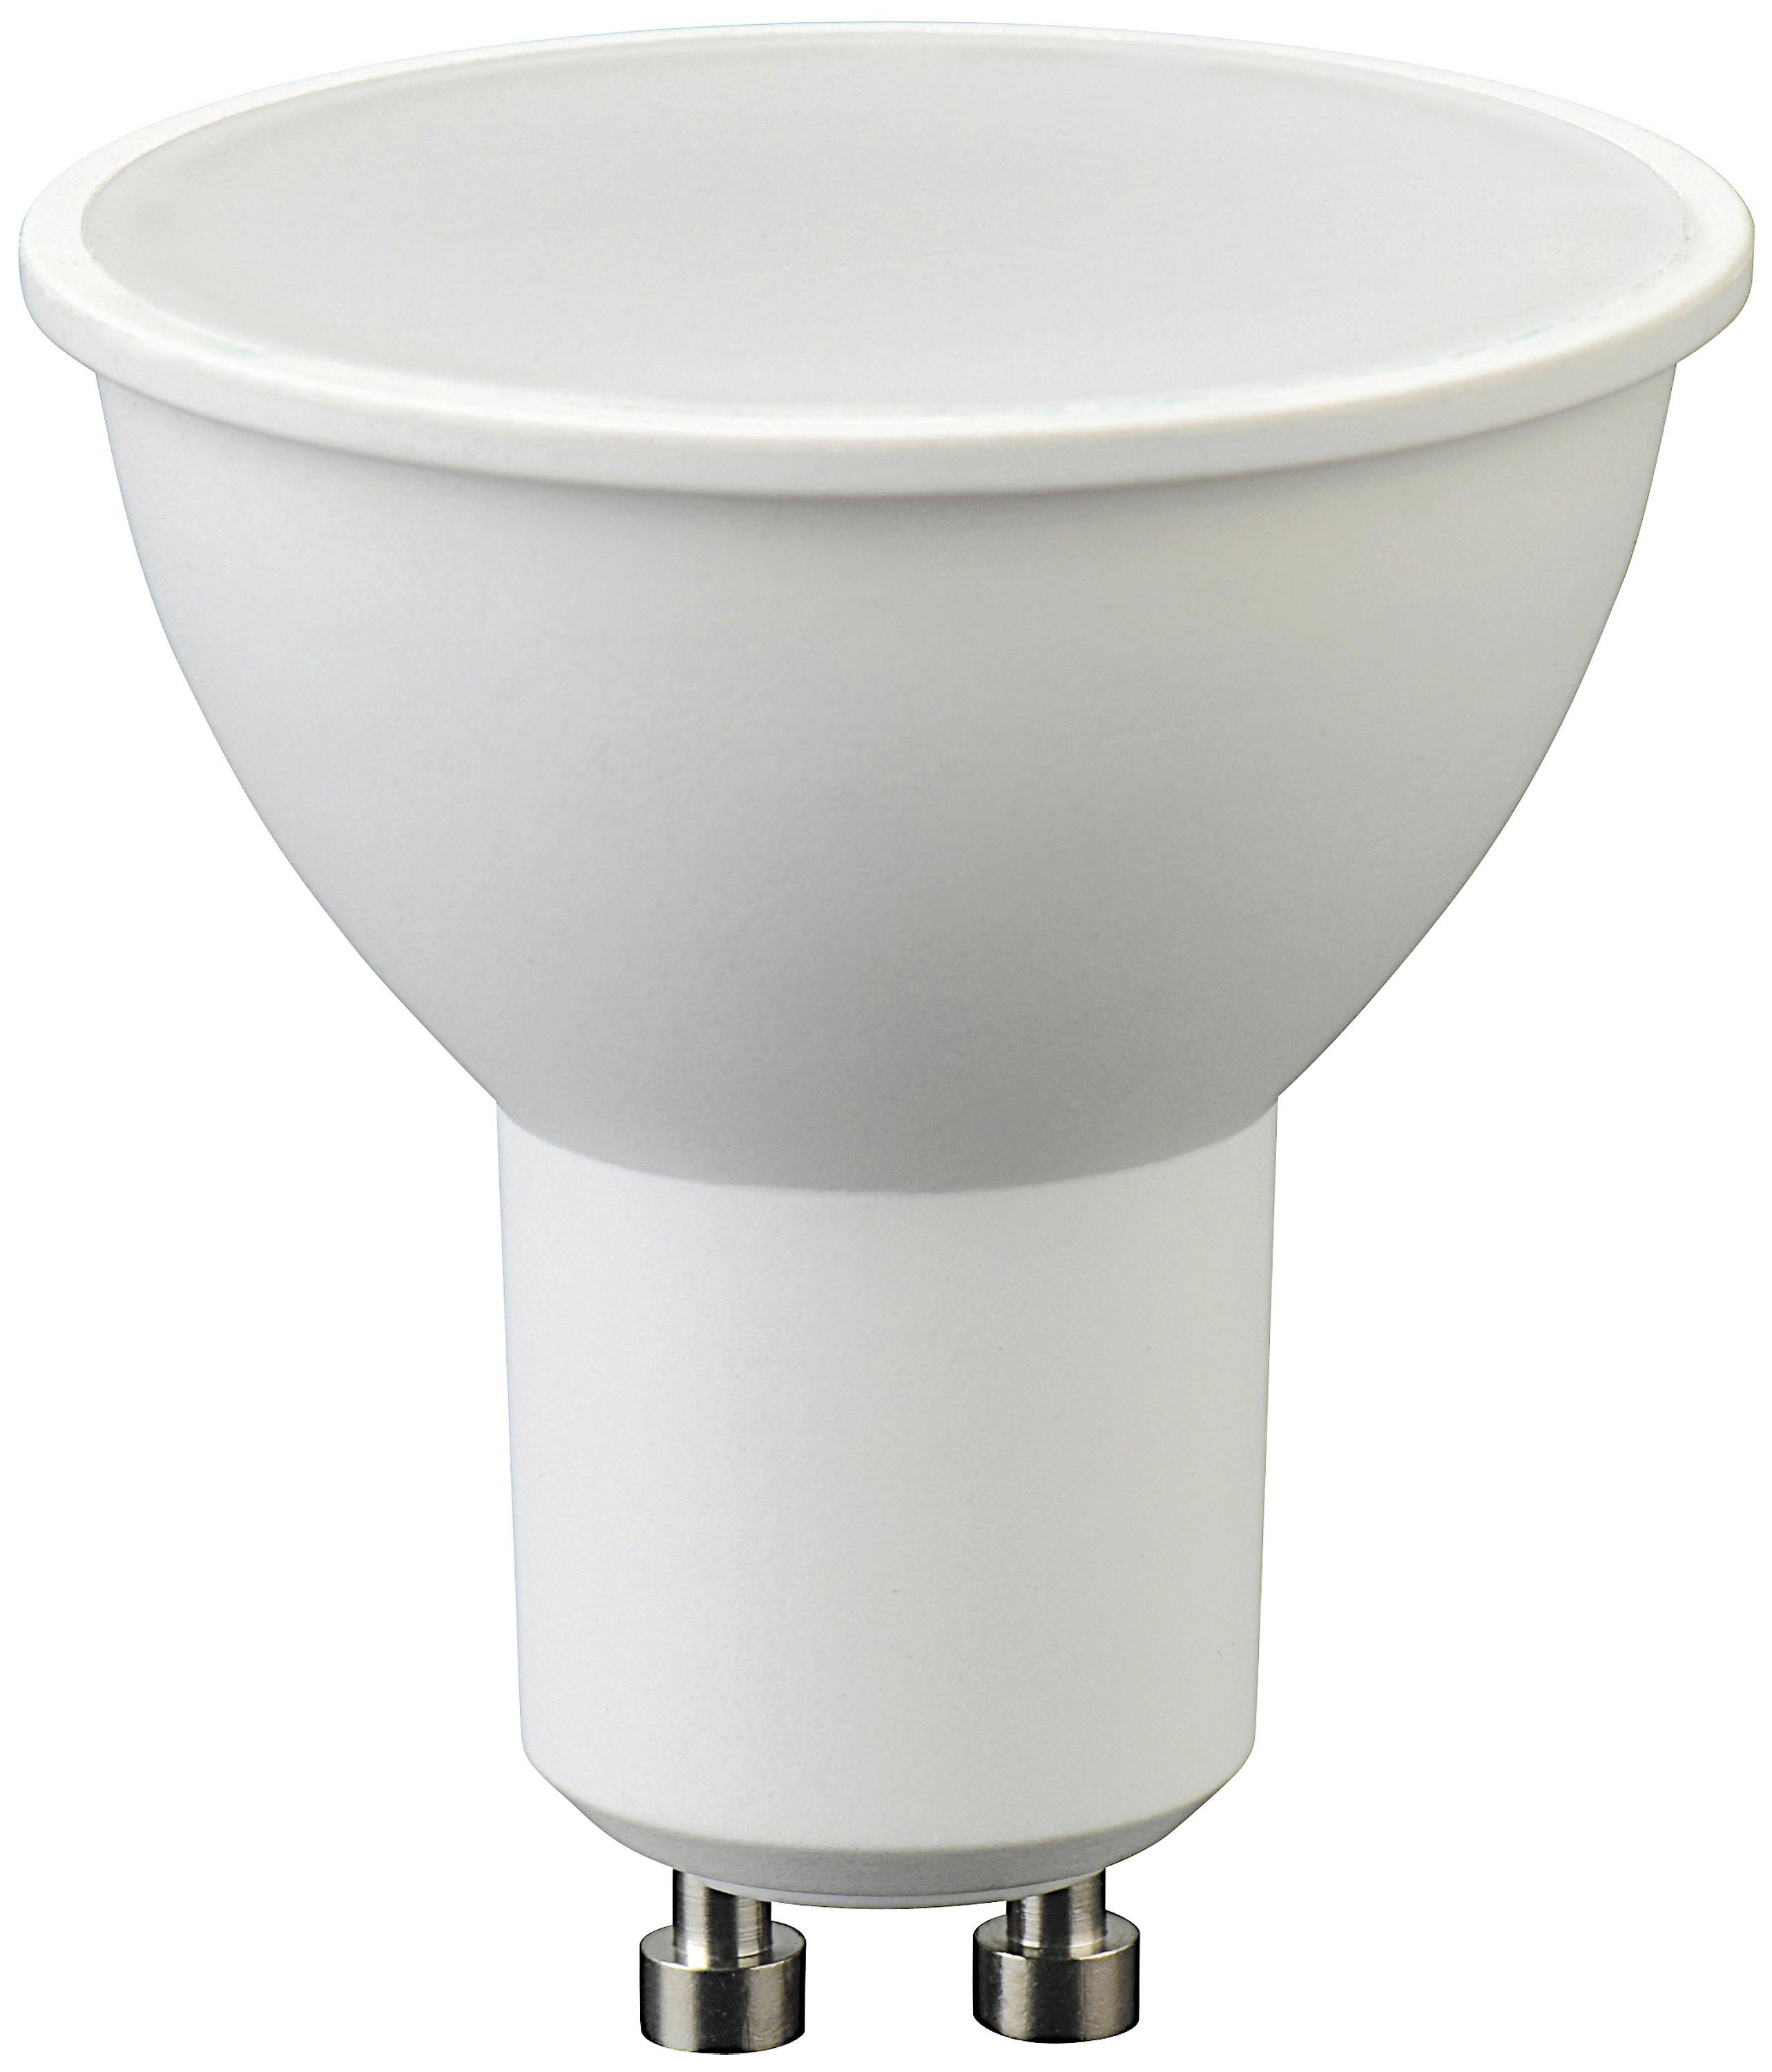 Лампа светодиодная bellight. Светодиодные лампа Bellight 220-240v. Lexman gu5.3 12 в 6 Вт прозрачная 500 лм нейтральный белый свет. Лампочка ac230v gu10. Лампа 6w 4000k Bellight 220-240v 50/60hz 10-2019 CEAC.